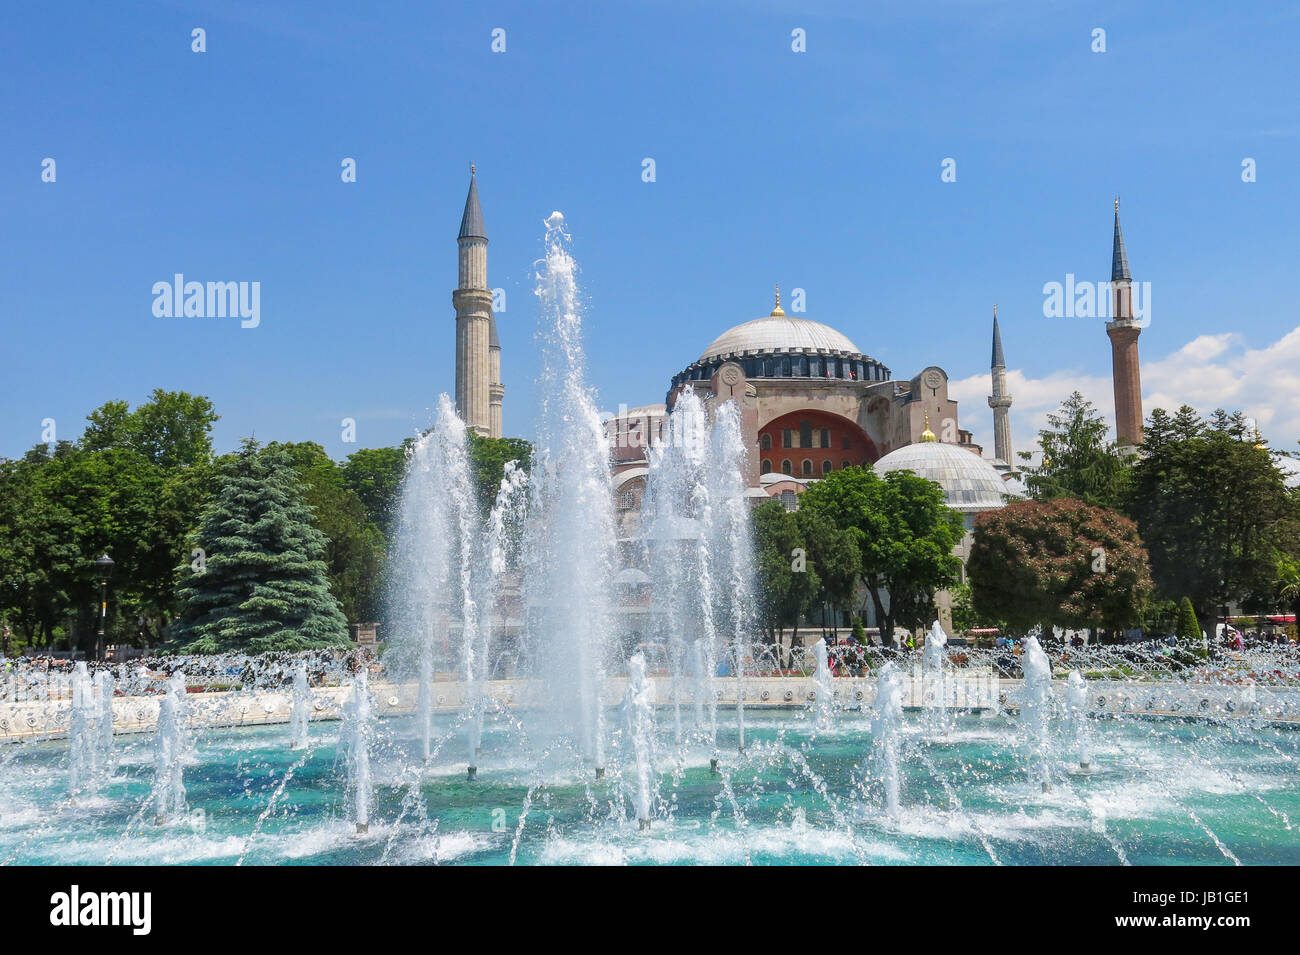 ISTANBUL, Turchia - 20 Maggio 2016: Istanbul, sulla piazza di Sultanahmet con vedute dell'Hagia Sophia. Più di 32 milioni di turisti in visita in Turchia ogni anno. Foto Stock